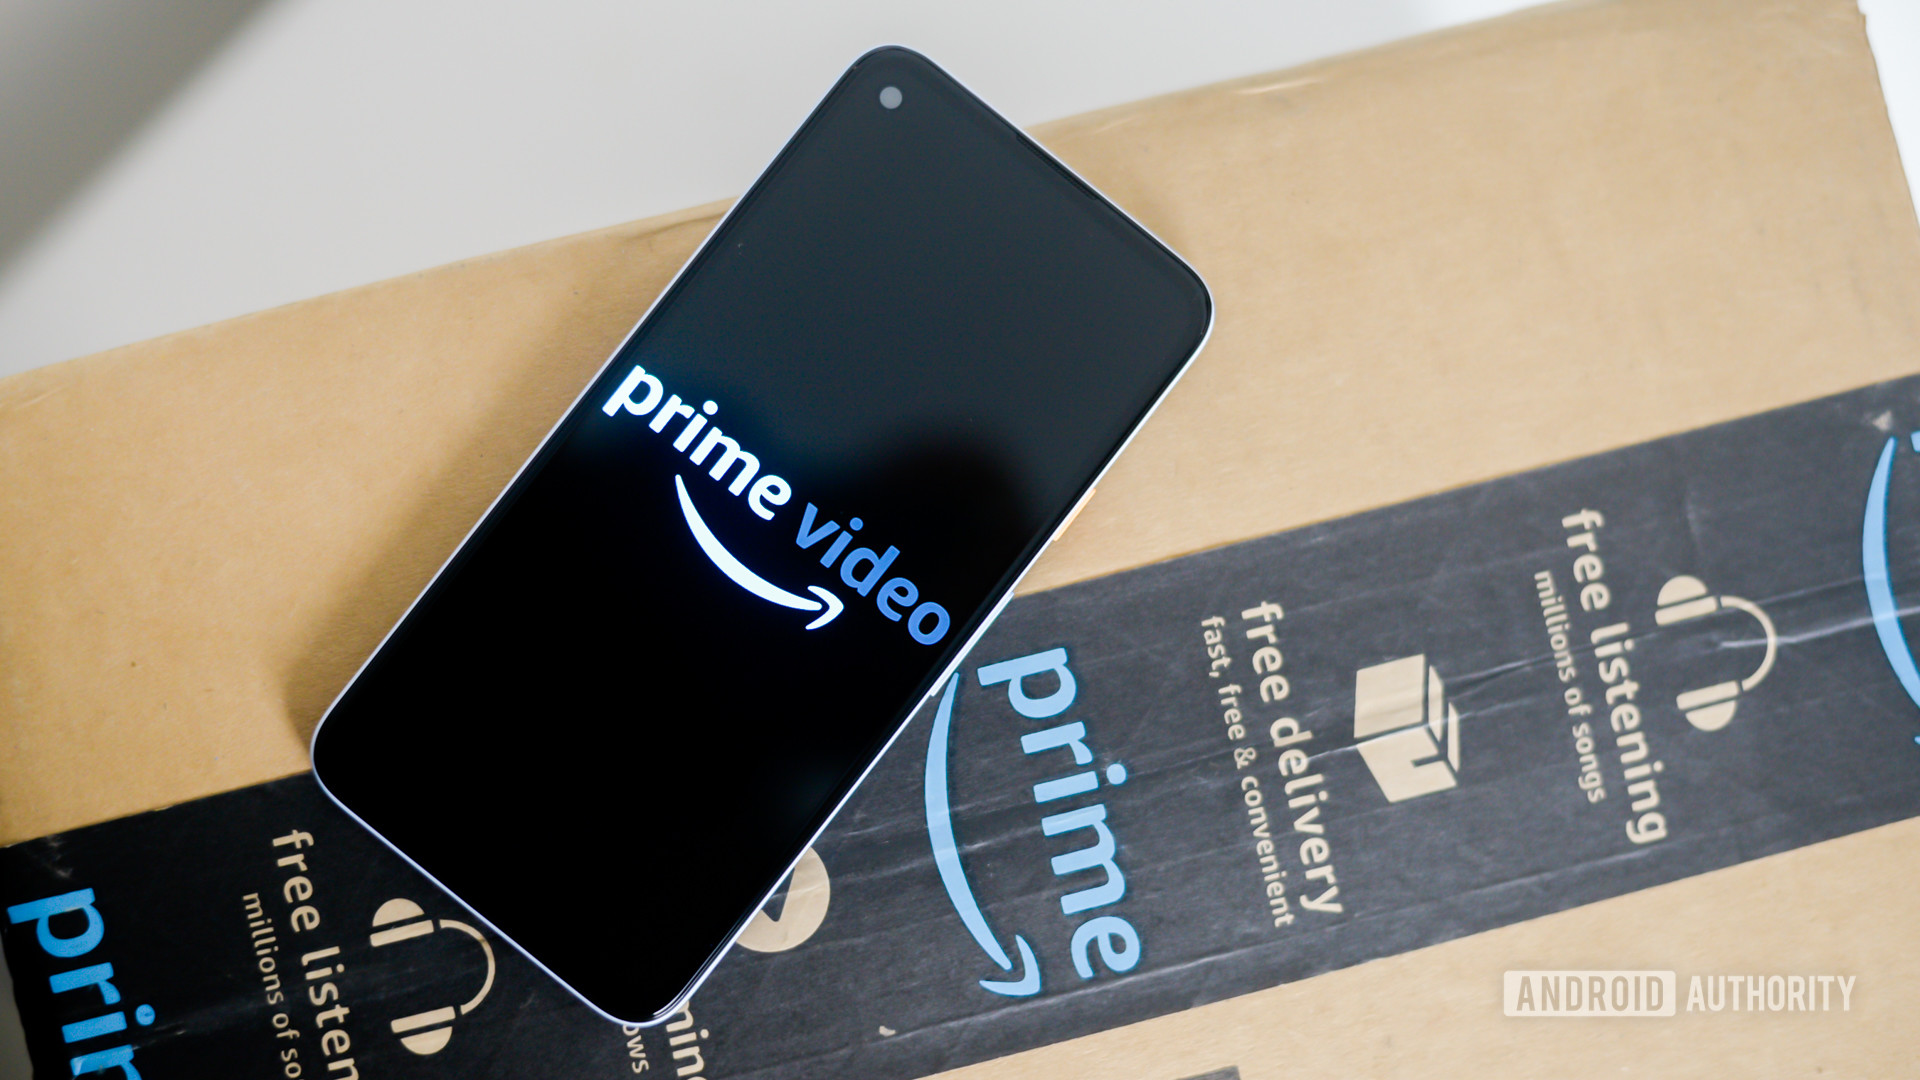 Los espectadores de Amazon Prime Video están abandonando el servicio debido a errores en el catálogo